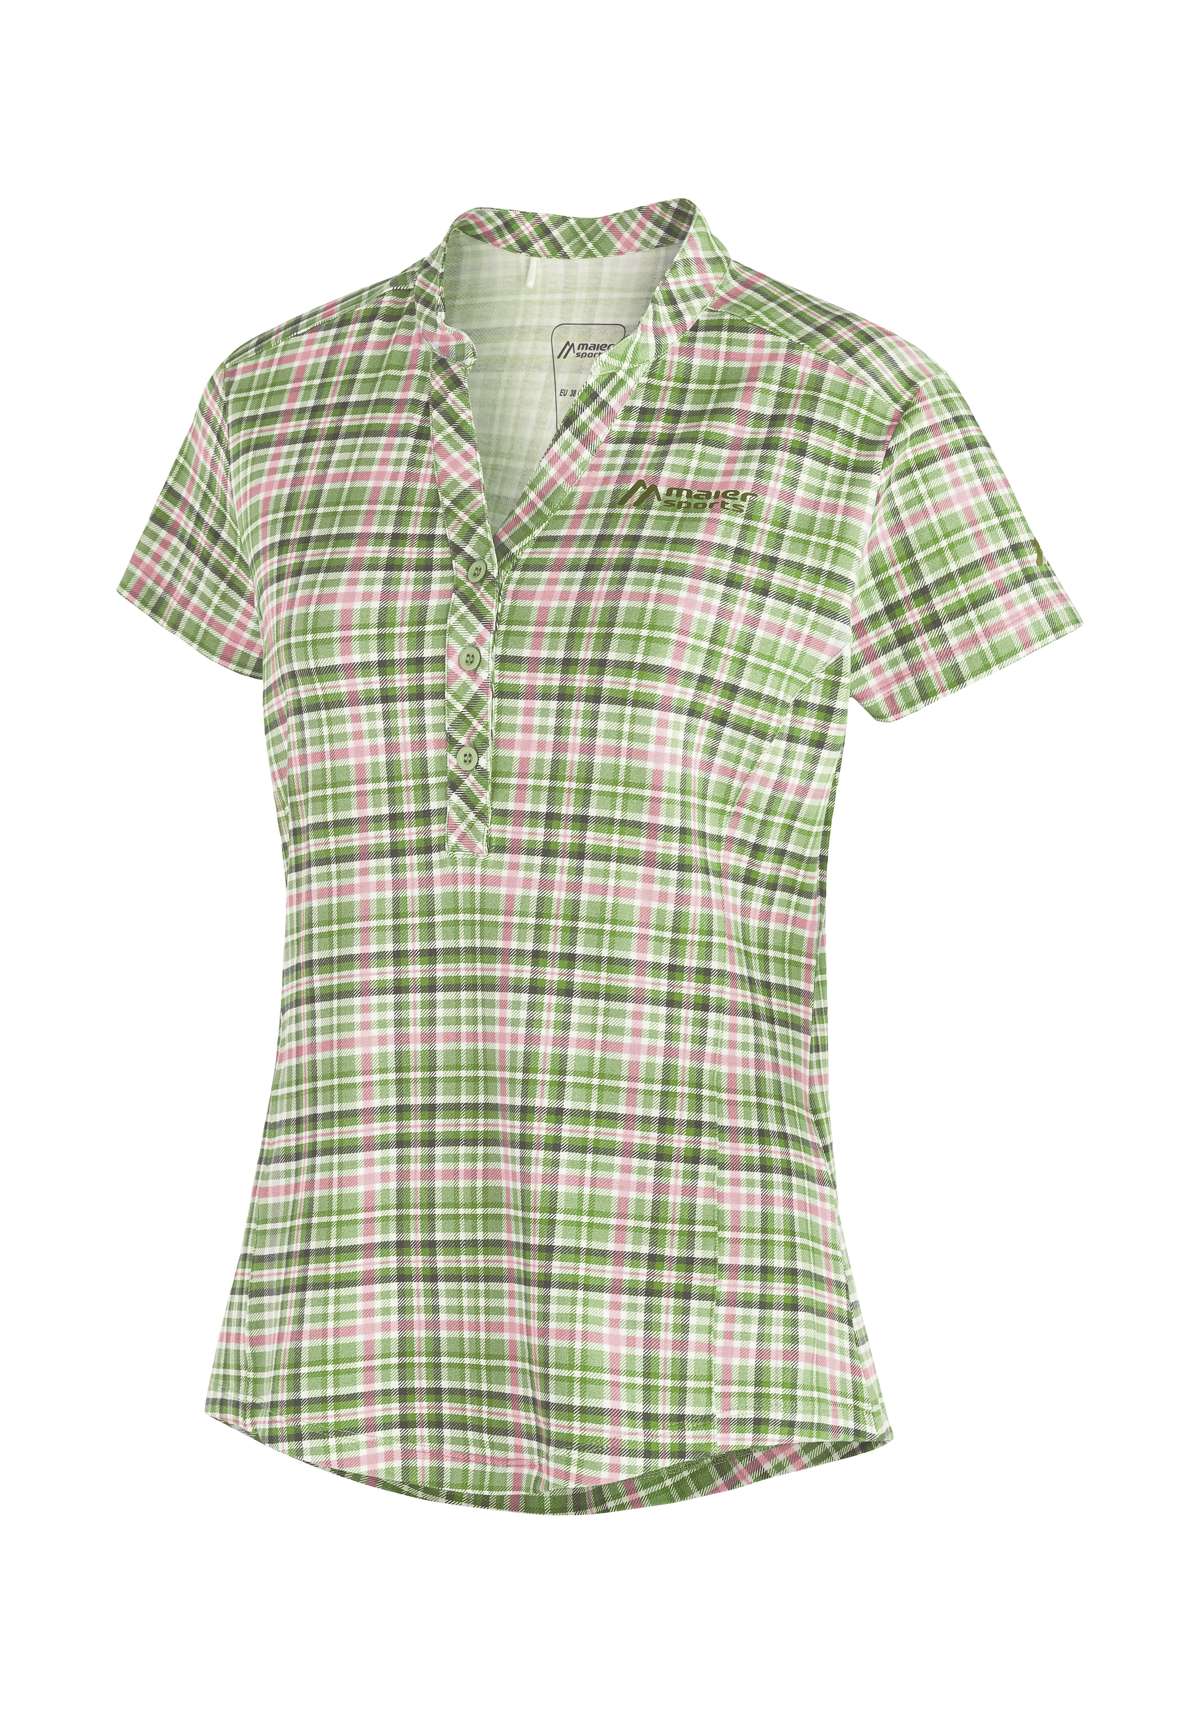 Функциональная блузка, женская блузка, дышащая блузка с короткими рукавами, походная блузка